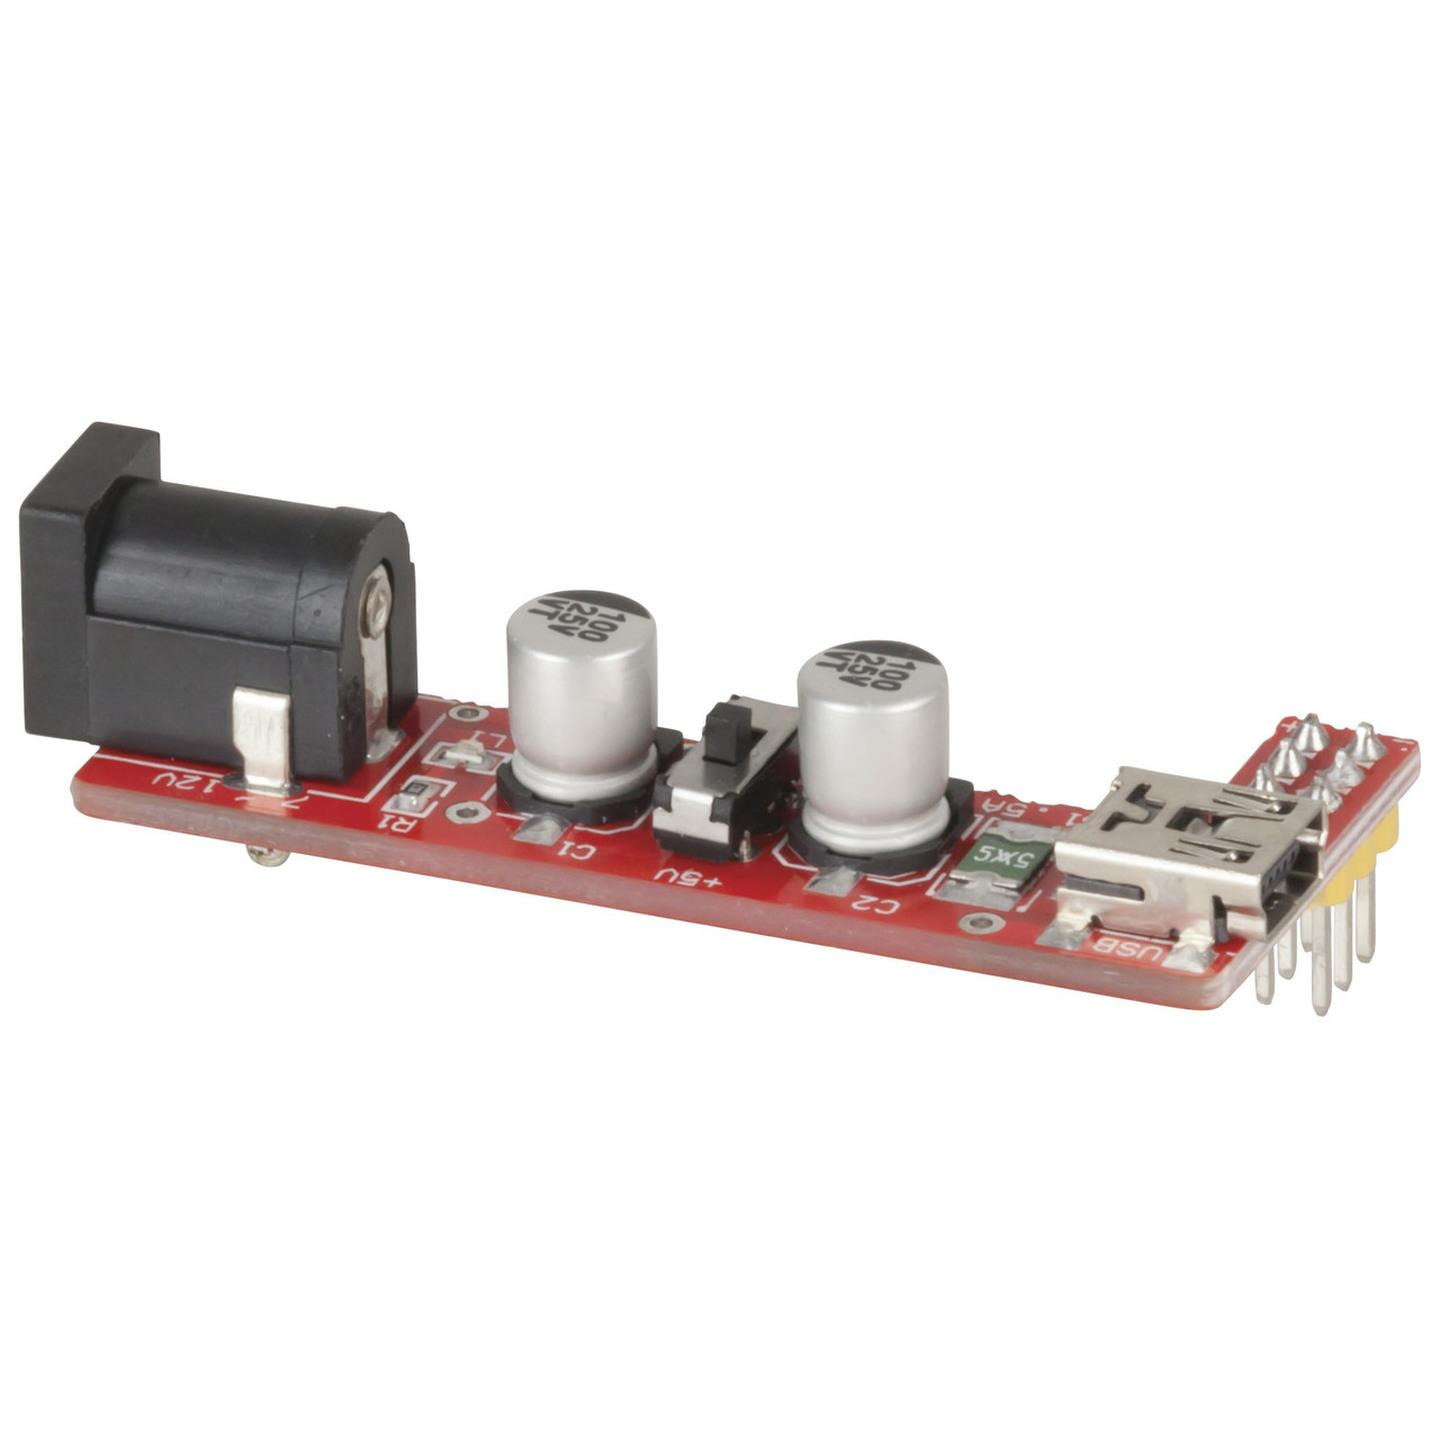 Duinotech Arduino Compatible Breadboard Power Module